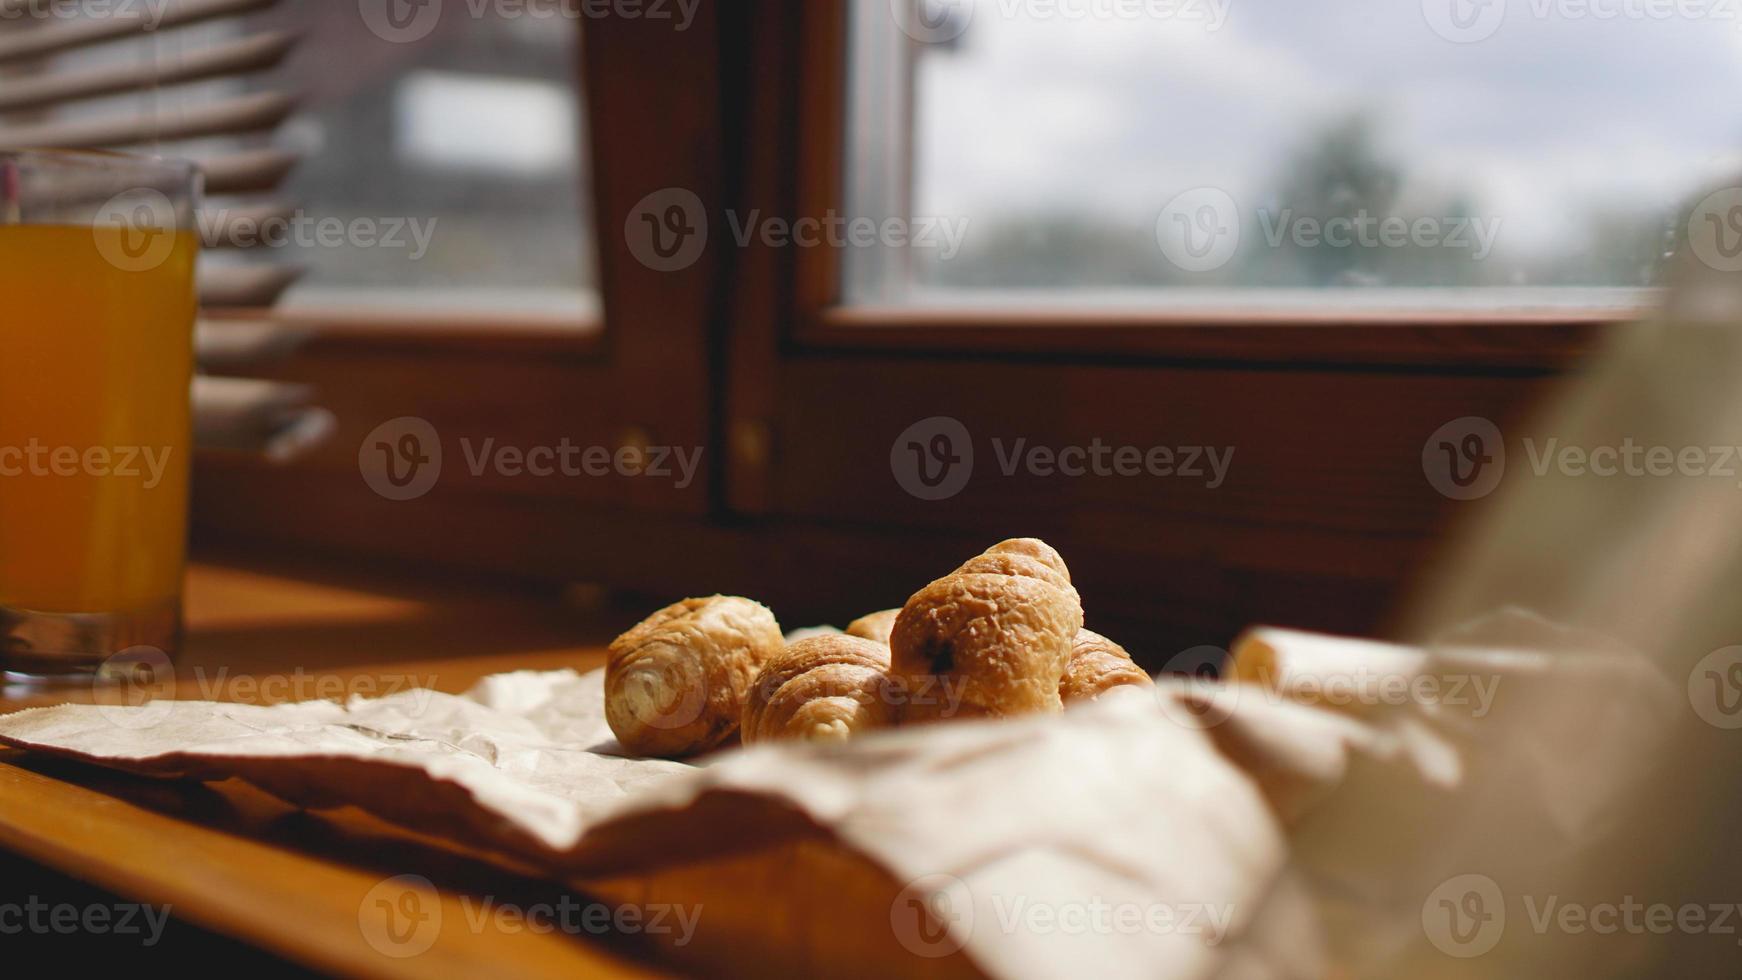 fransk frukost med croissant, kraftporslin på kraftpapper foto